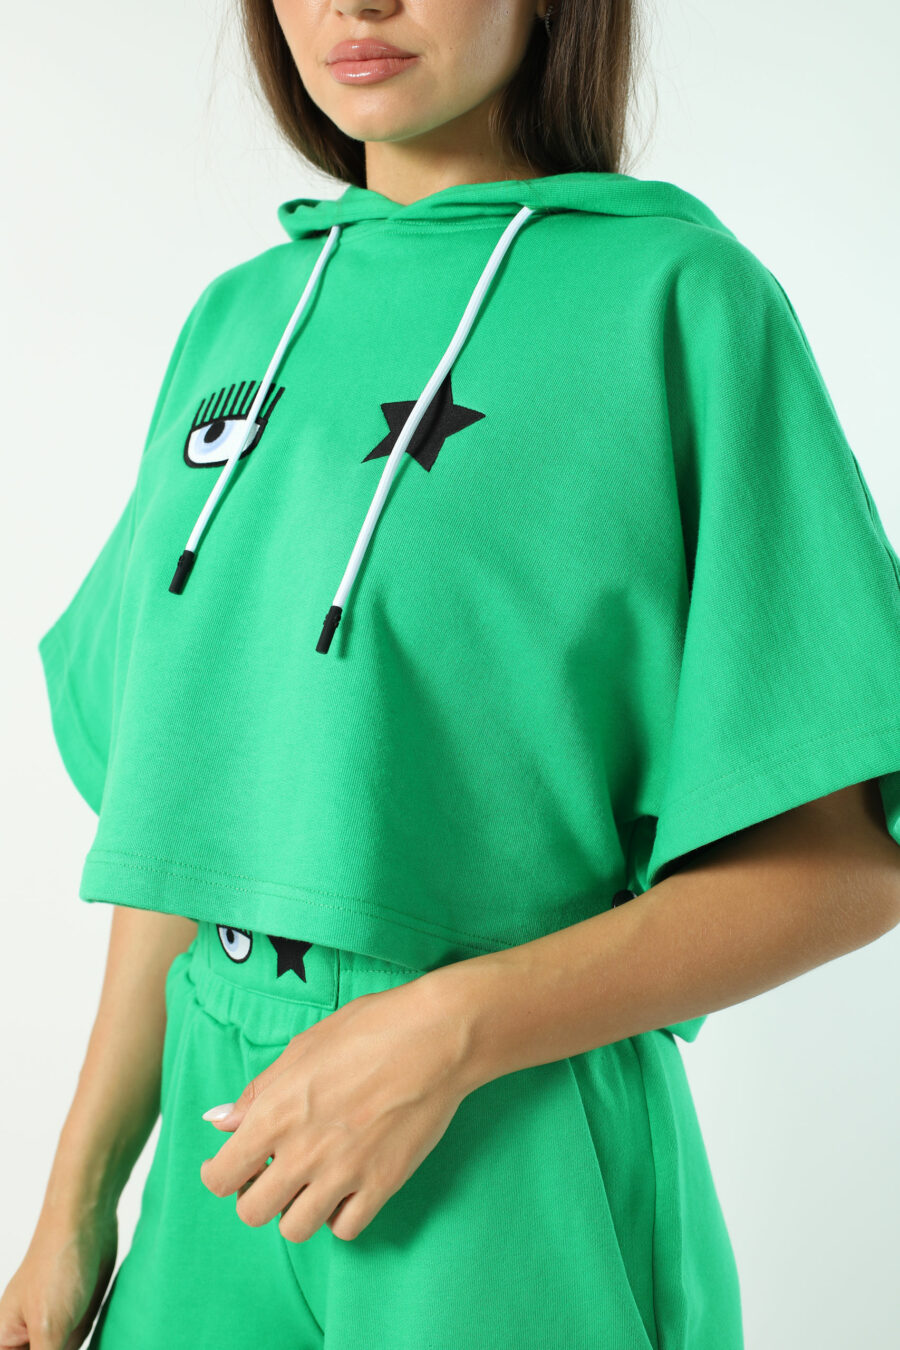 Sudadera manga corta verde con capucha y logo ojo y estrella - Photos 2593